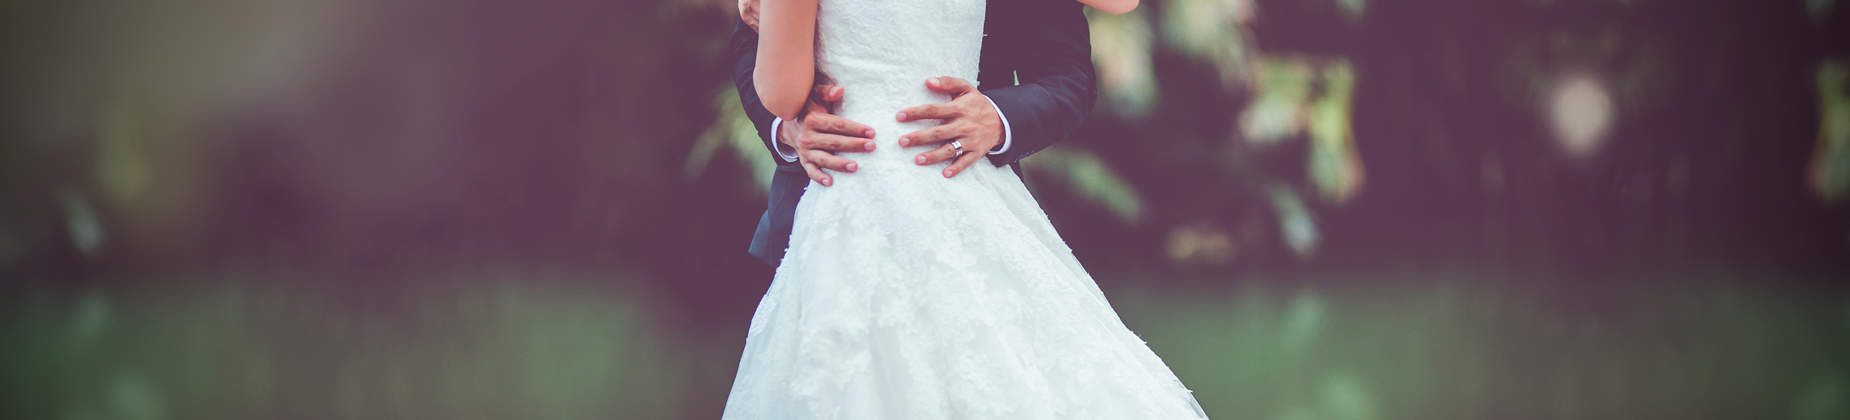 cómo planear una boda sin desequilibrar tus finanzas